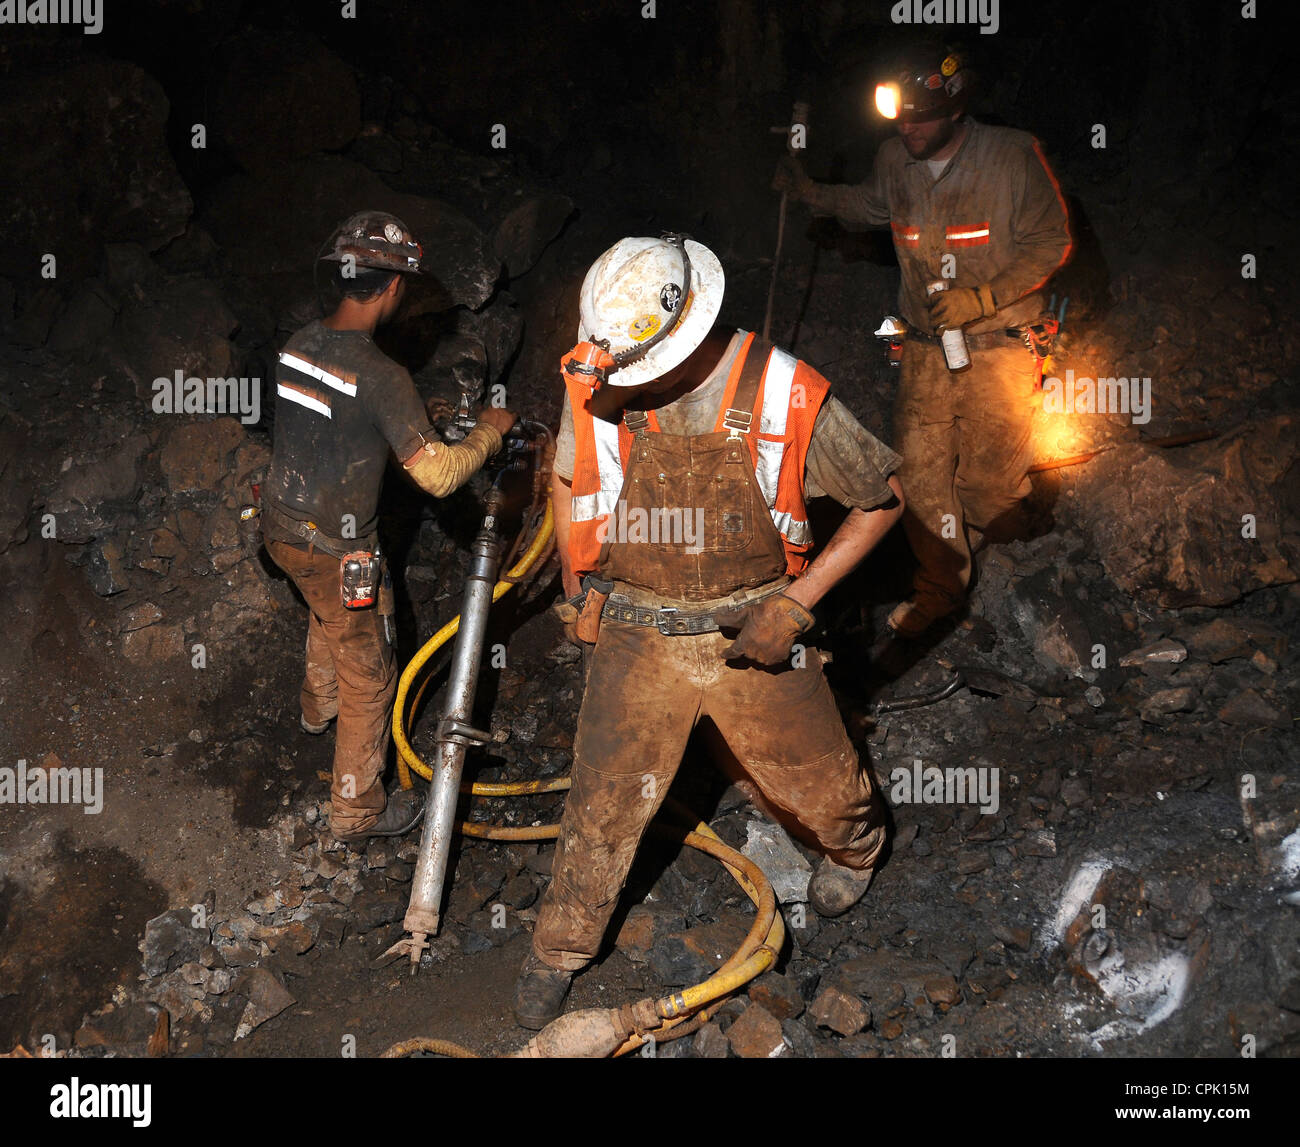 Les étudiants en génie minier percer des trous pour poudre noire dans une mine souterraine. Banque D'Images